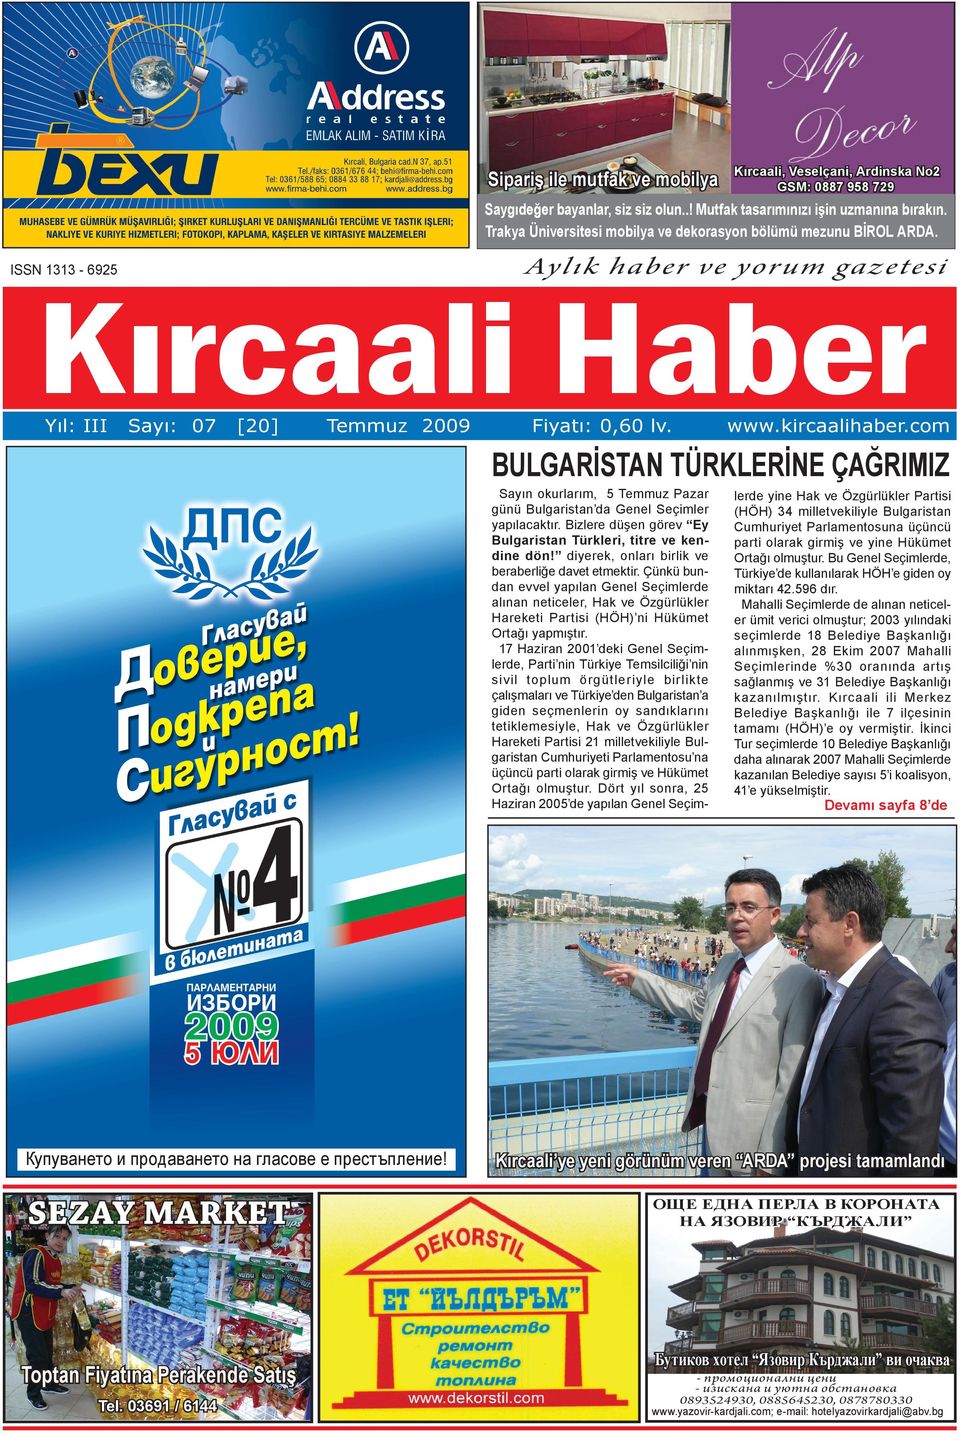 kircaalihaber.com BULGARİSTAN TÜRKLERİNE ÇAĞRIMIZ Sayın okurlarım, 5 Temmuz Pazar günü Bulgaristan da Genel Seçimler yapılacaktır. Bizlere düşen görev Ey Bulgaristan Türkleri, titre ve kendine dön!